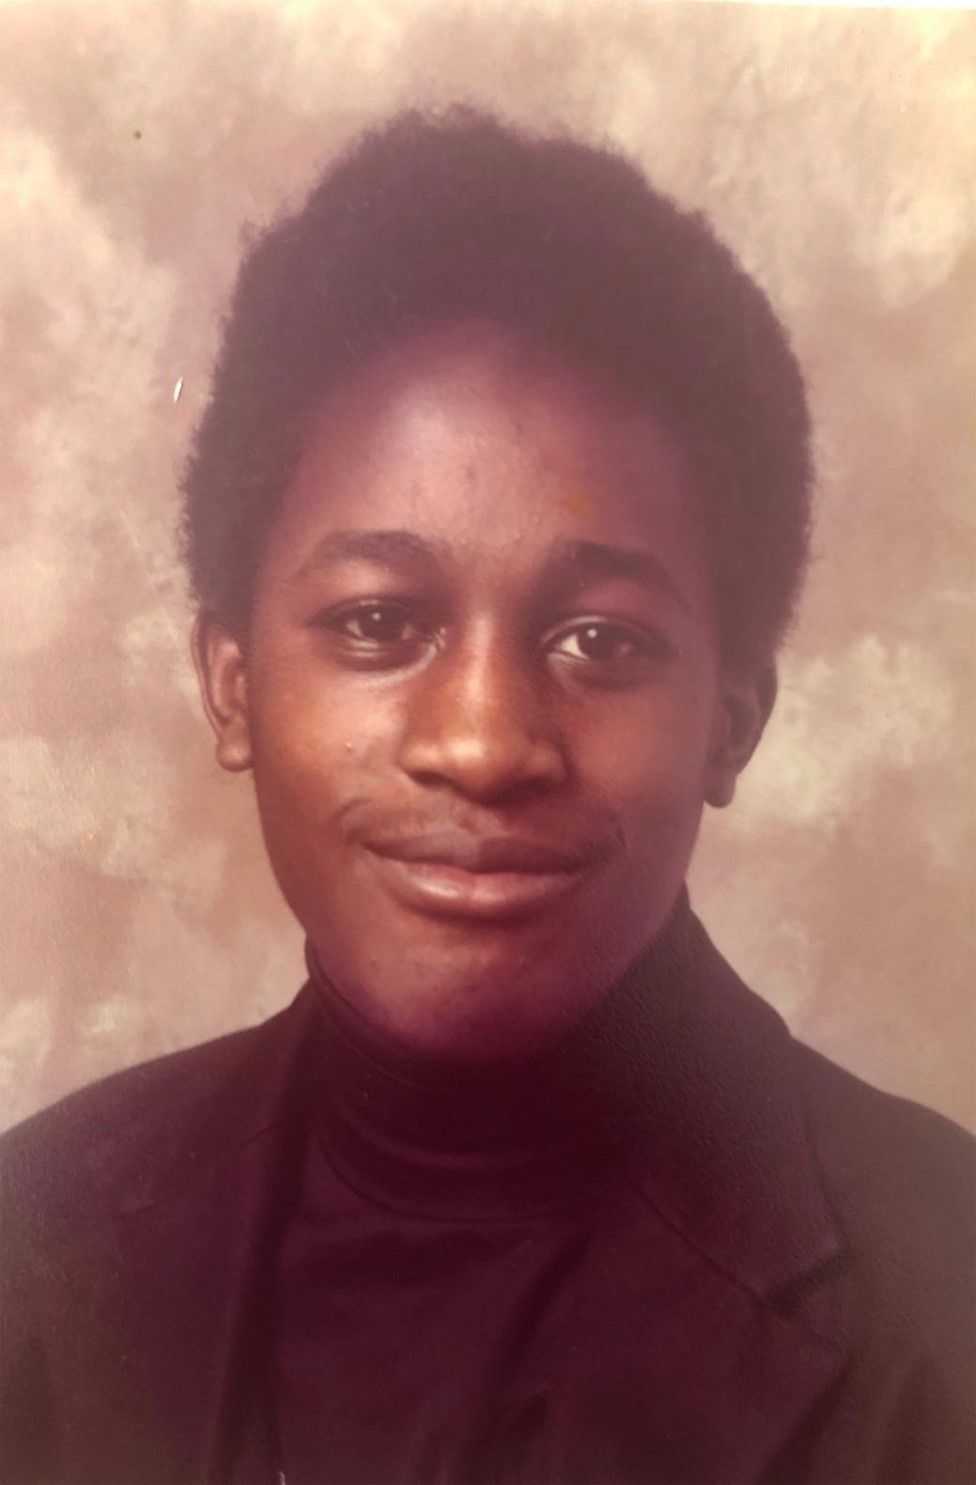 Tony Kofi aged 15